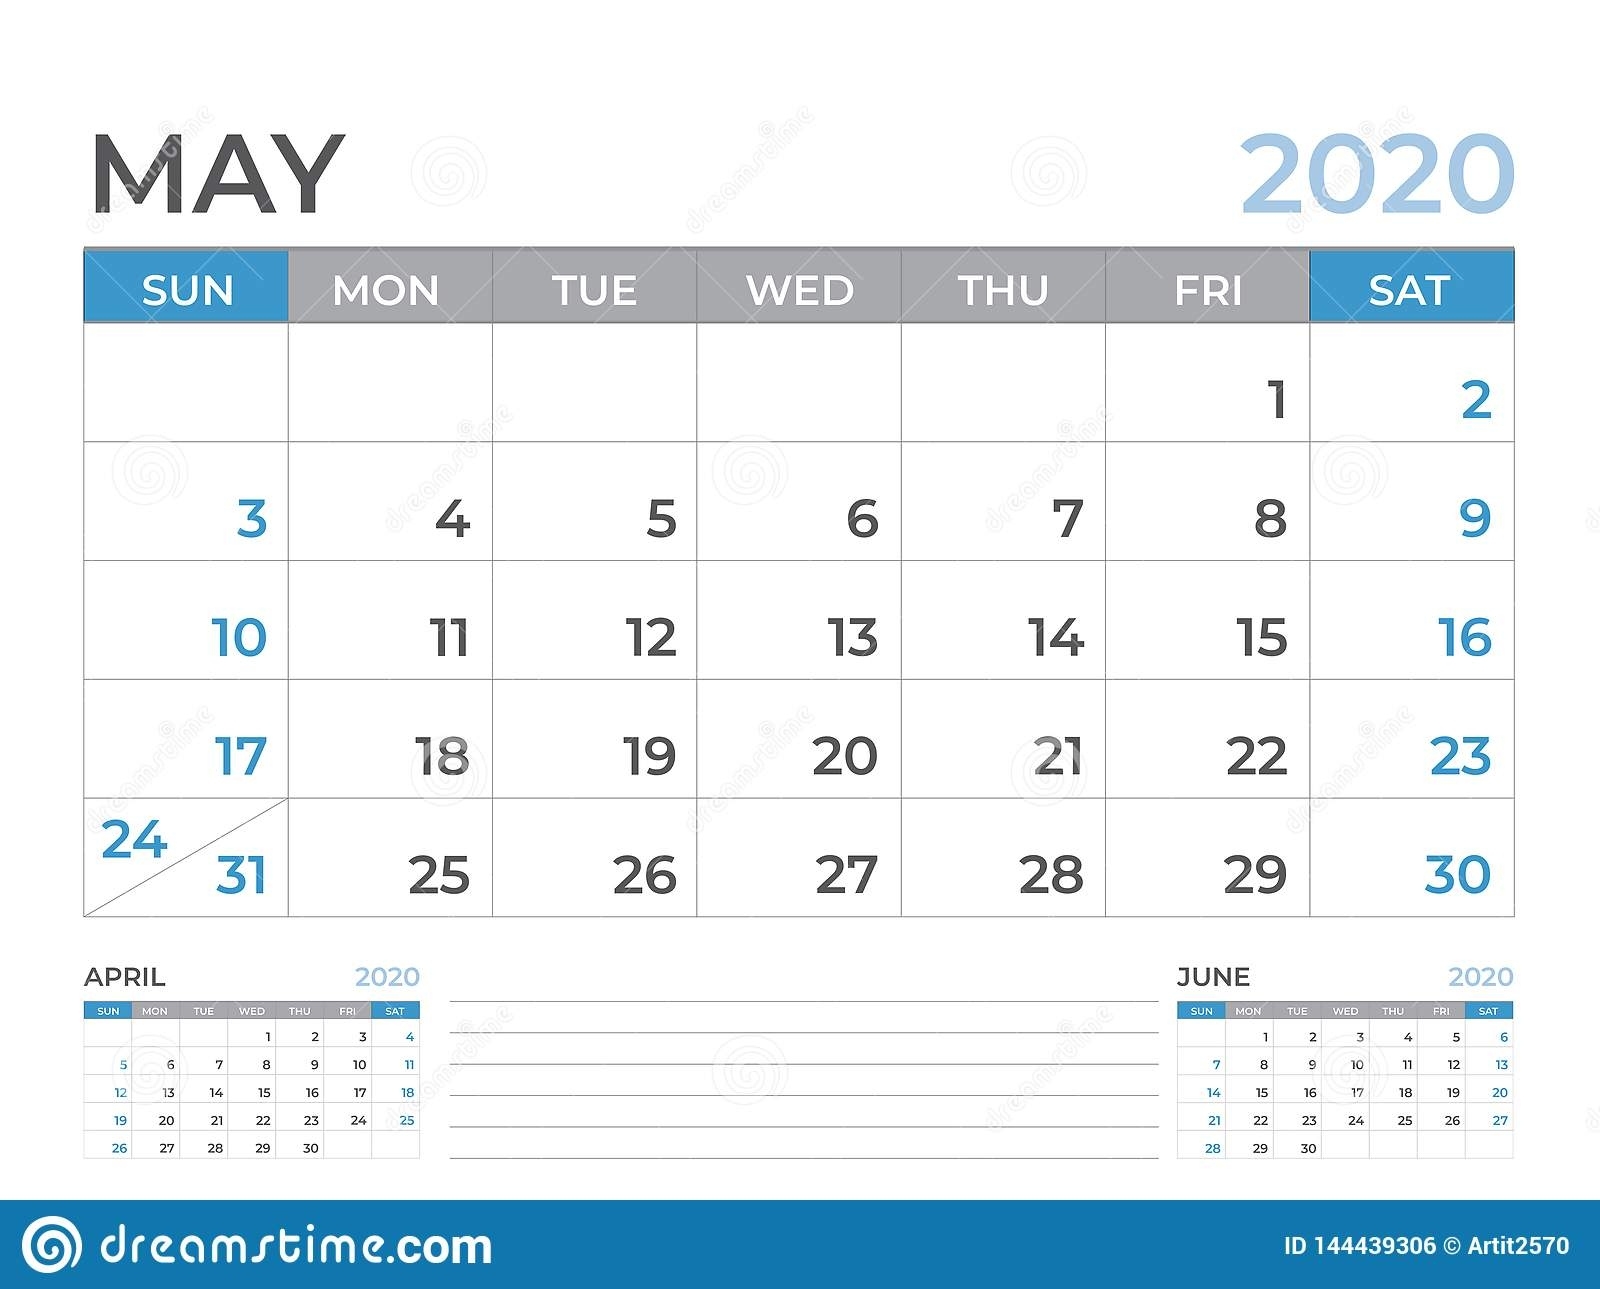 May 2020 Calendar Template, Desk Calendar Layout Size 8 X 6 18 X 24 Calendar Template